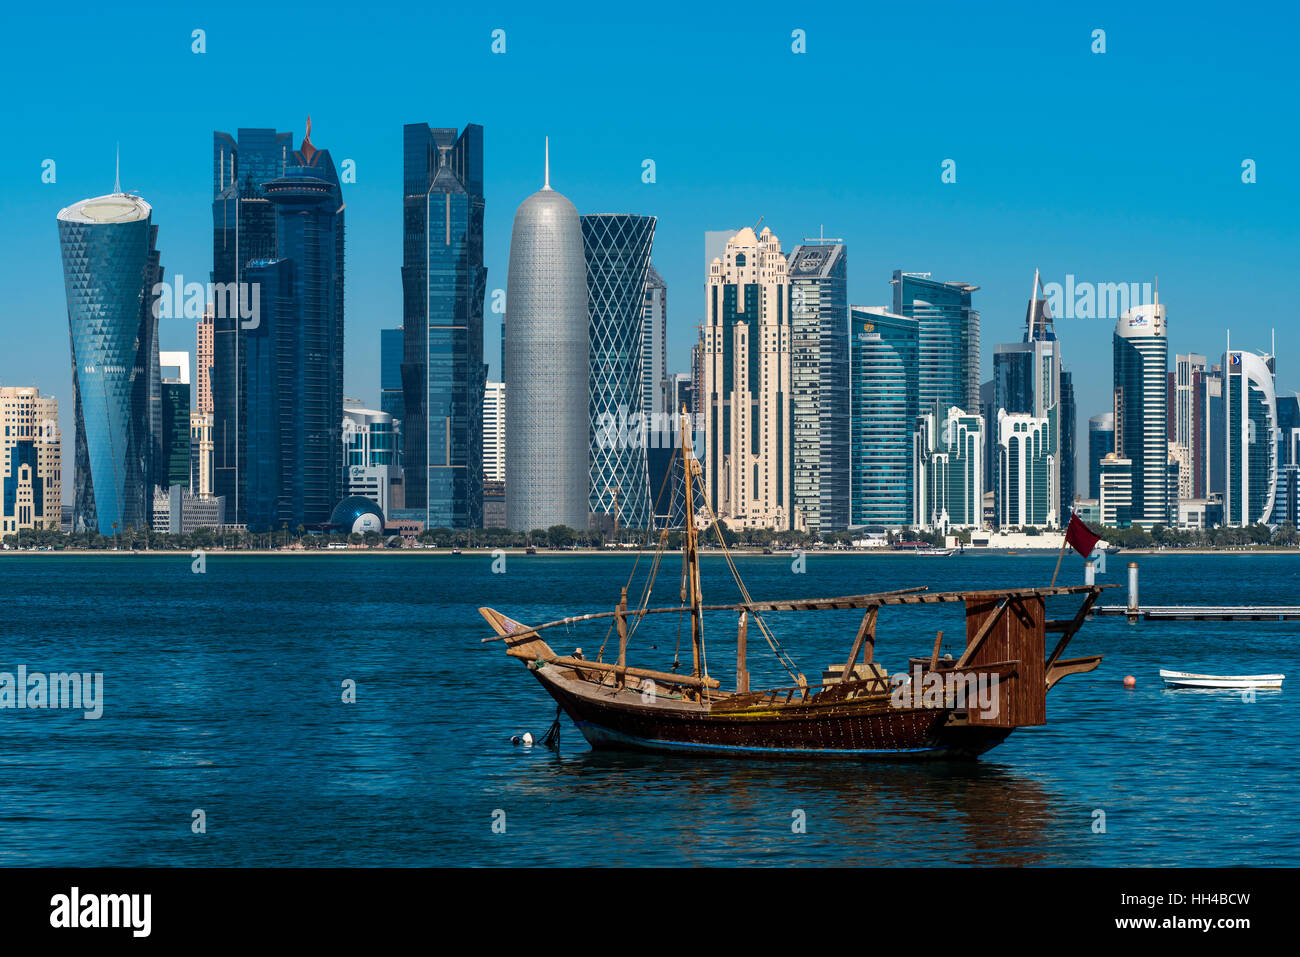 Velero tradicional dhow con el área financiera skyline detrás, Doha, Qatar Foto de stock